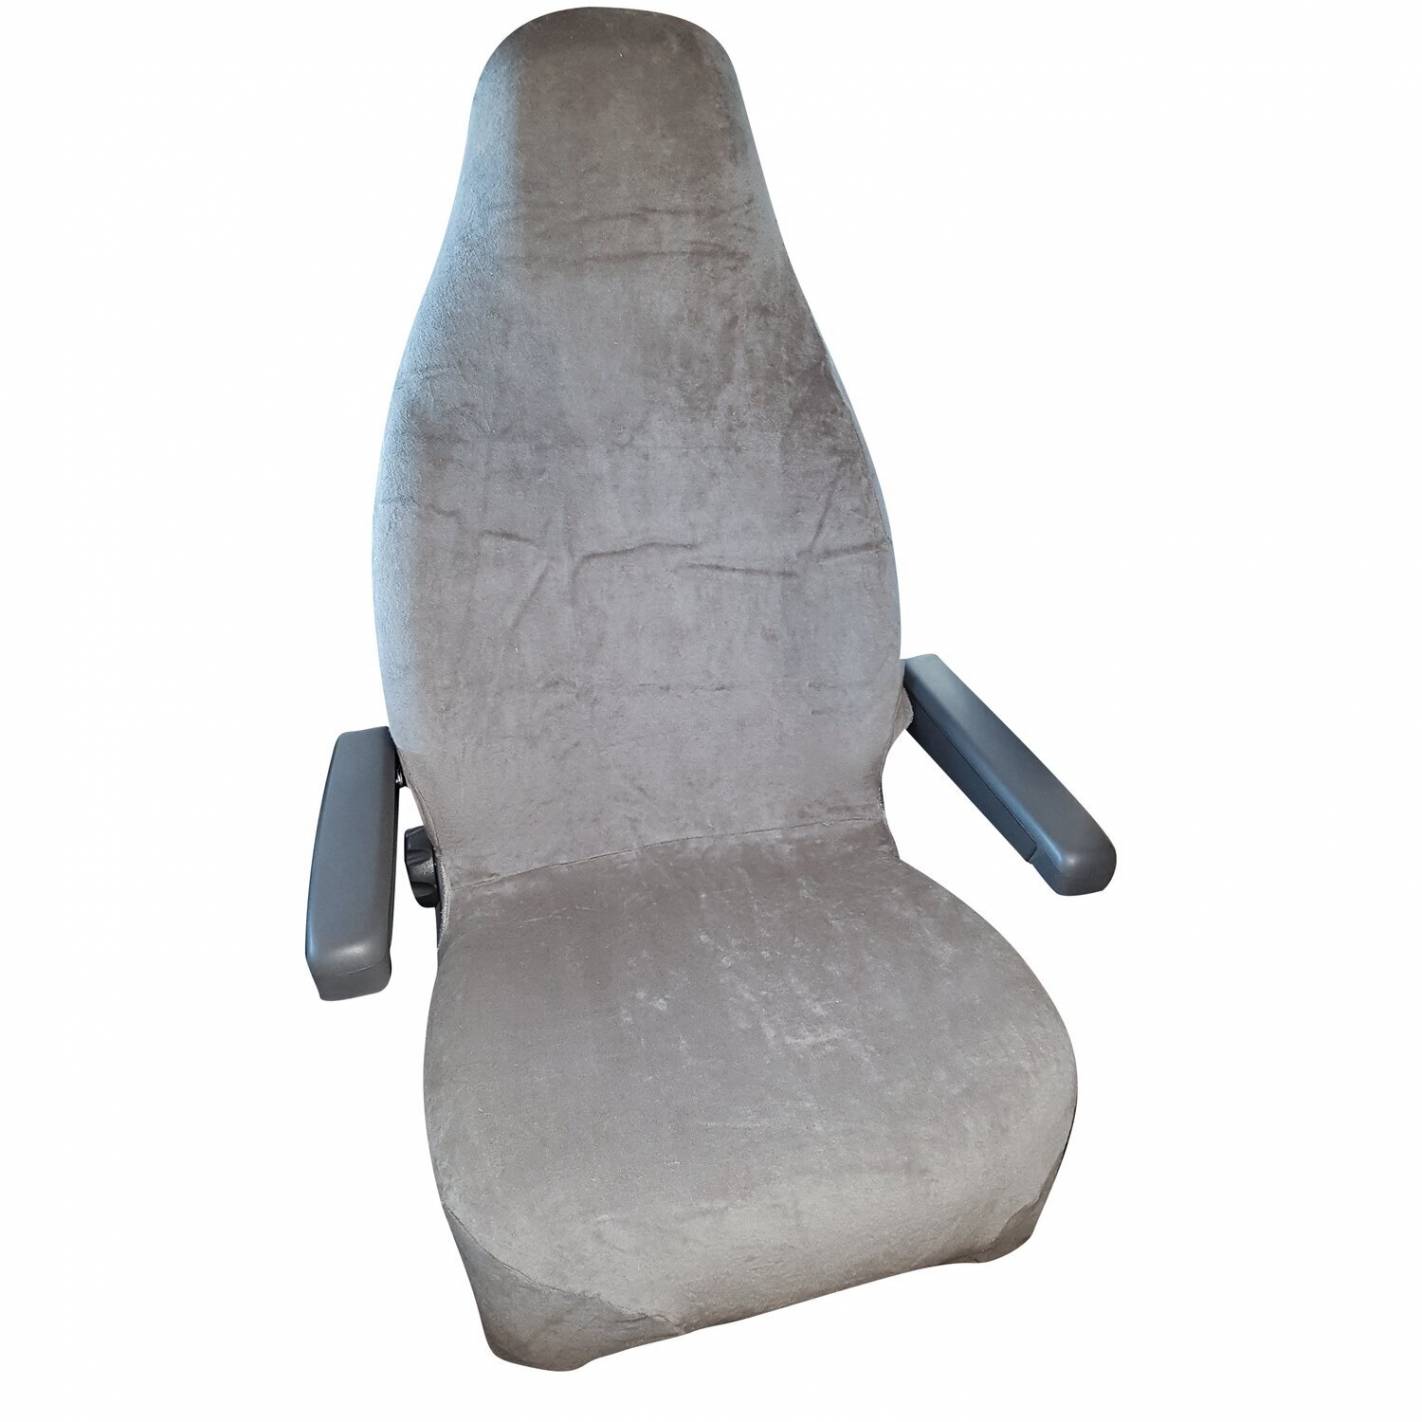 Gros housses de siège en tissu éponge pour une protection parfaite